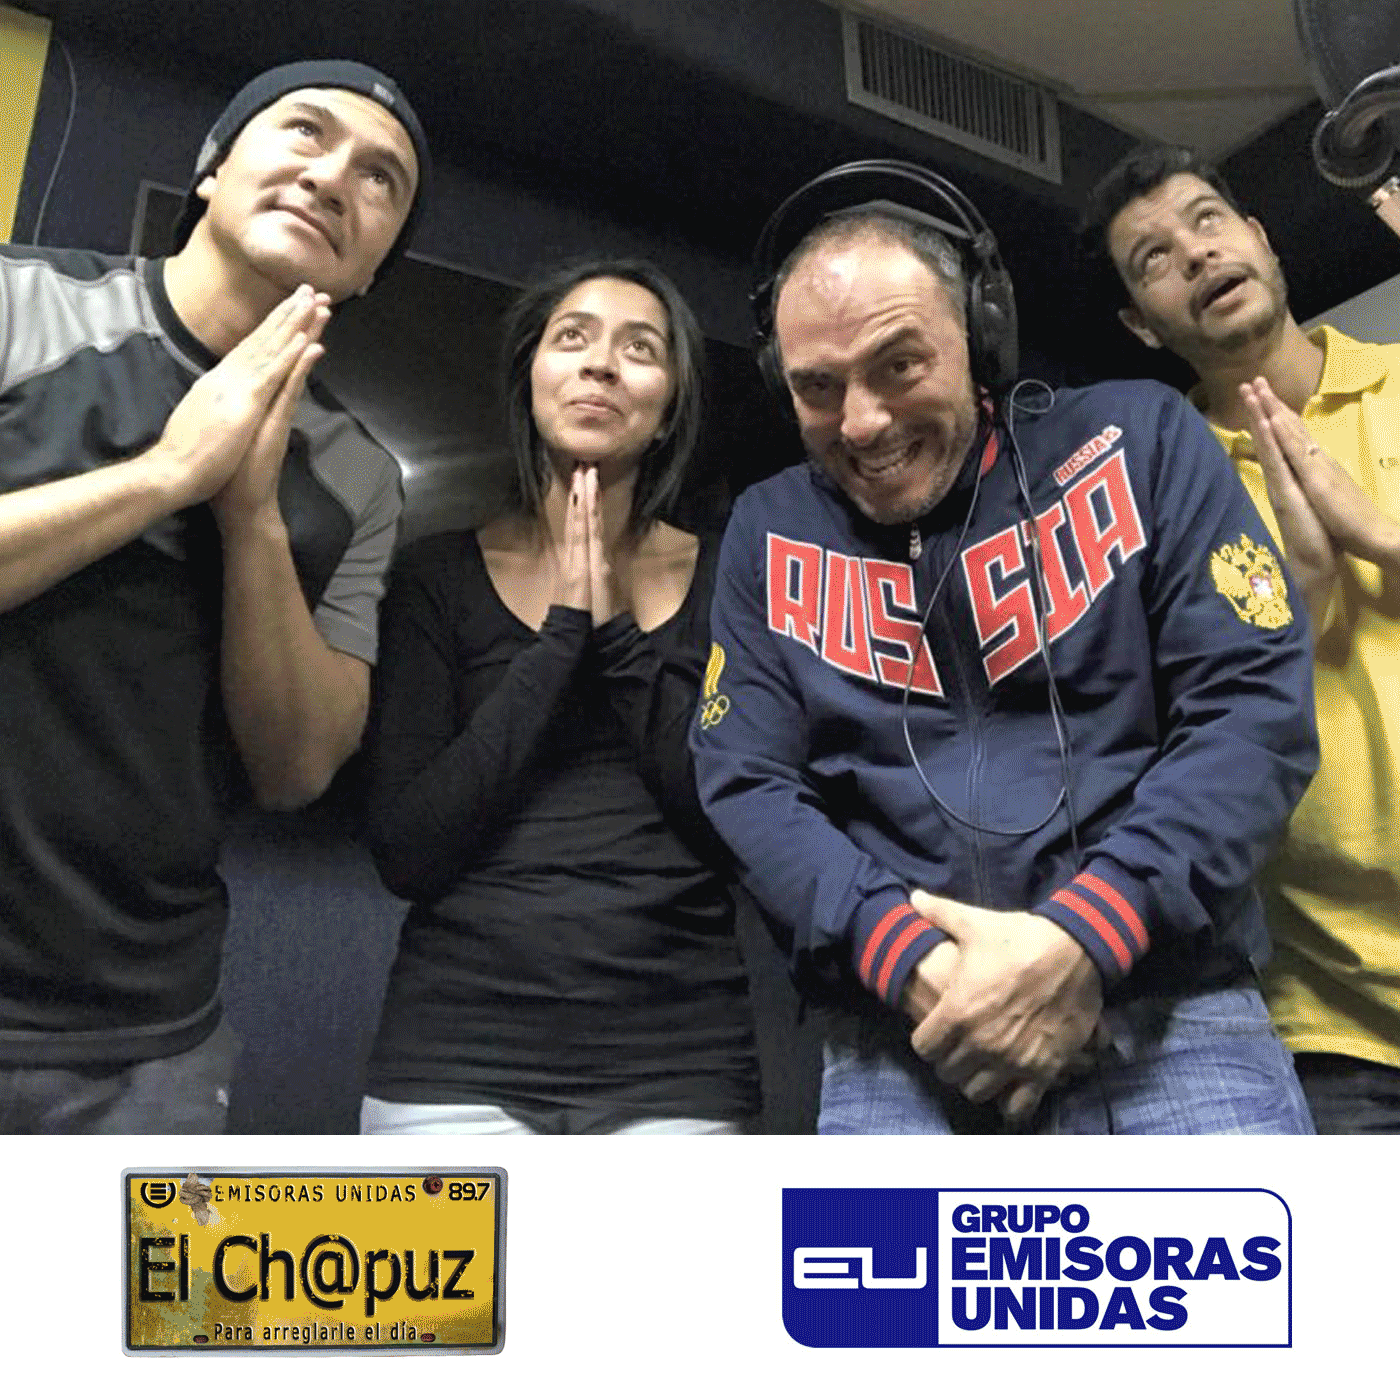 EC025 - El Chapuz - Emisoras unidas - #MeTieneChino